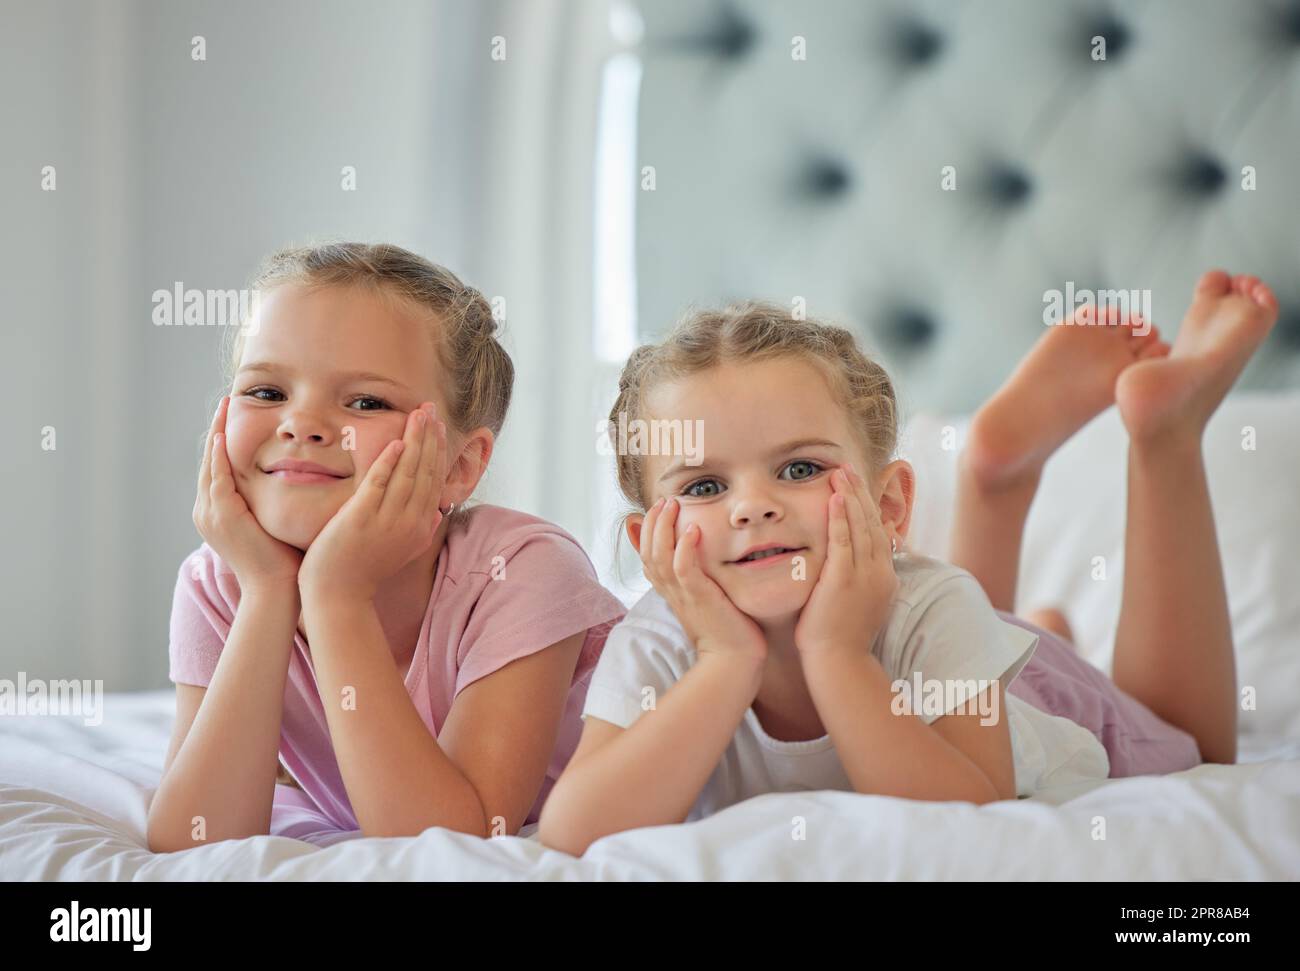 Portrait de deux petites filles allongé sur un lit à la maison. Les filles souriantes se détendent et ont l'air confortables, deux sœurs blondes de race blanche aiment se coucher ensemble dans une chambre lumineuse à la maison Banque D'Images